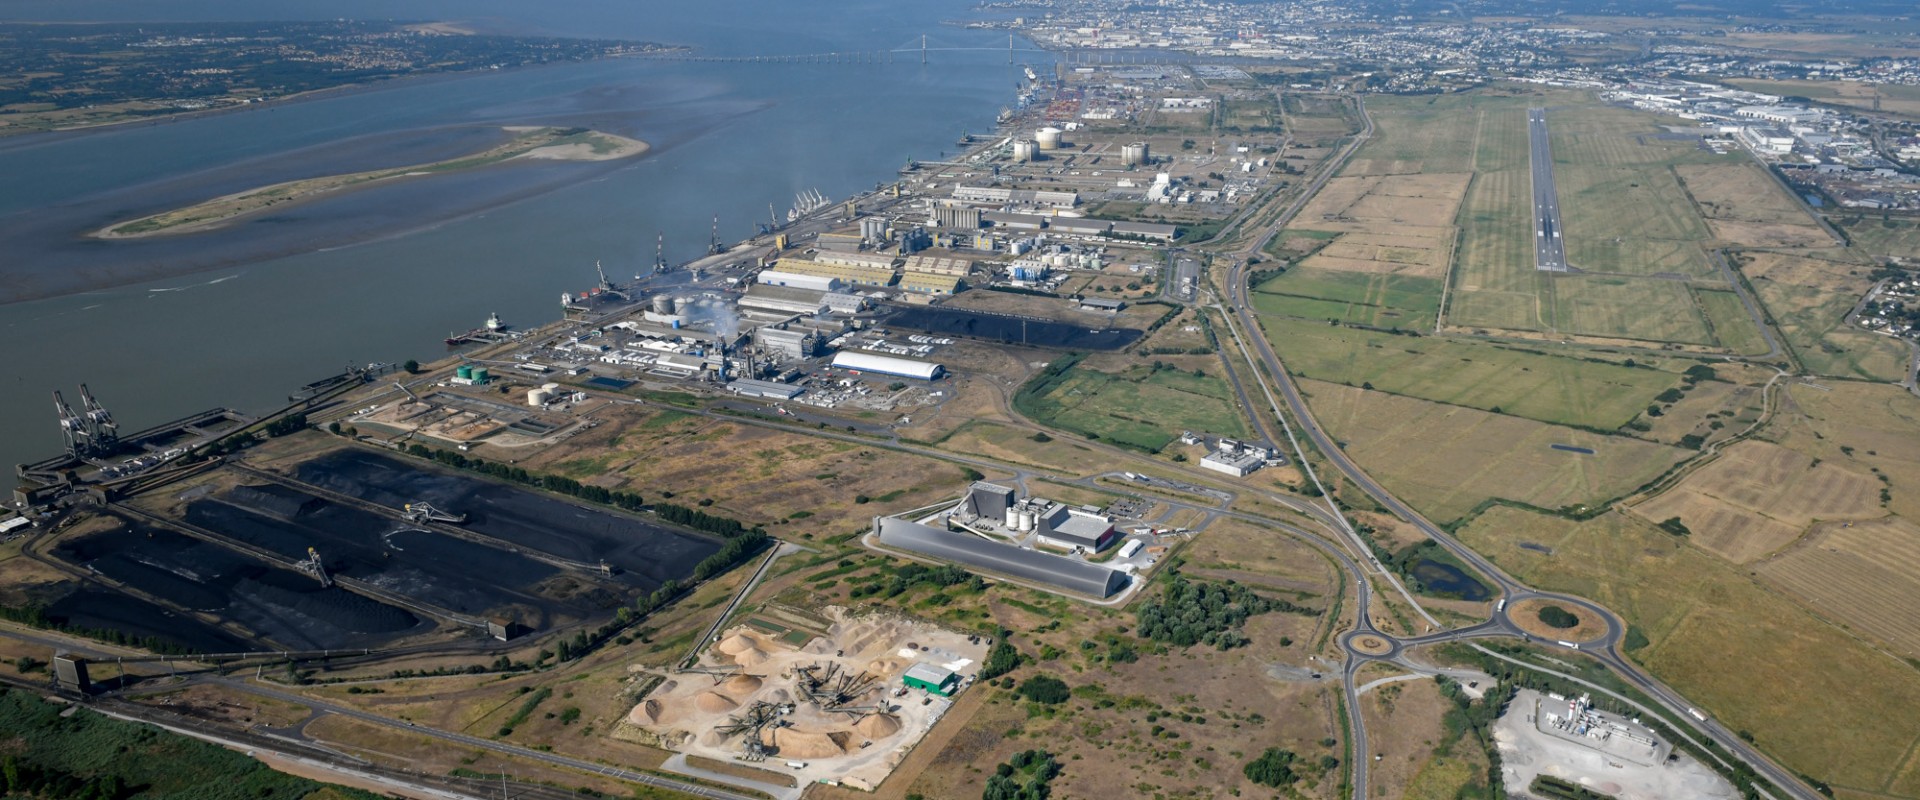 Nantes ‒ Saint Nazaire Port's Montoir de Bretagne Facility To Be the Site of a Hydrogen Production Unit